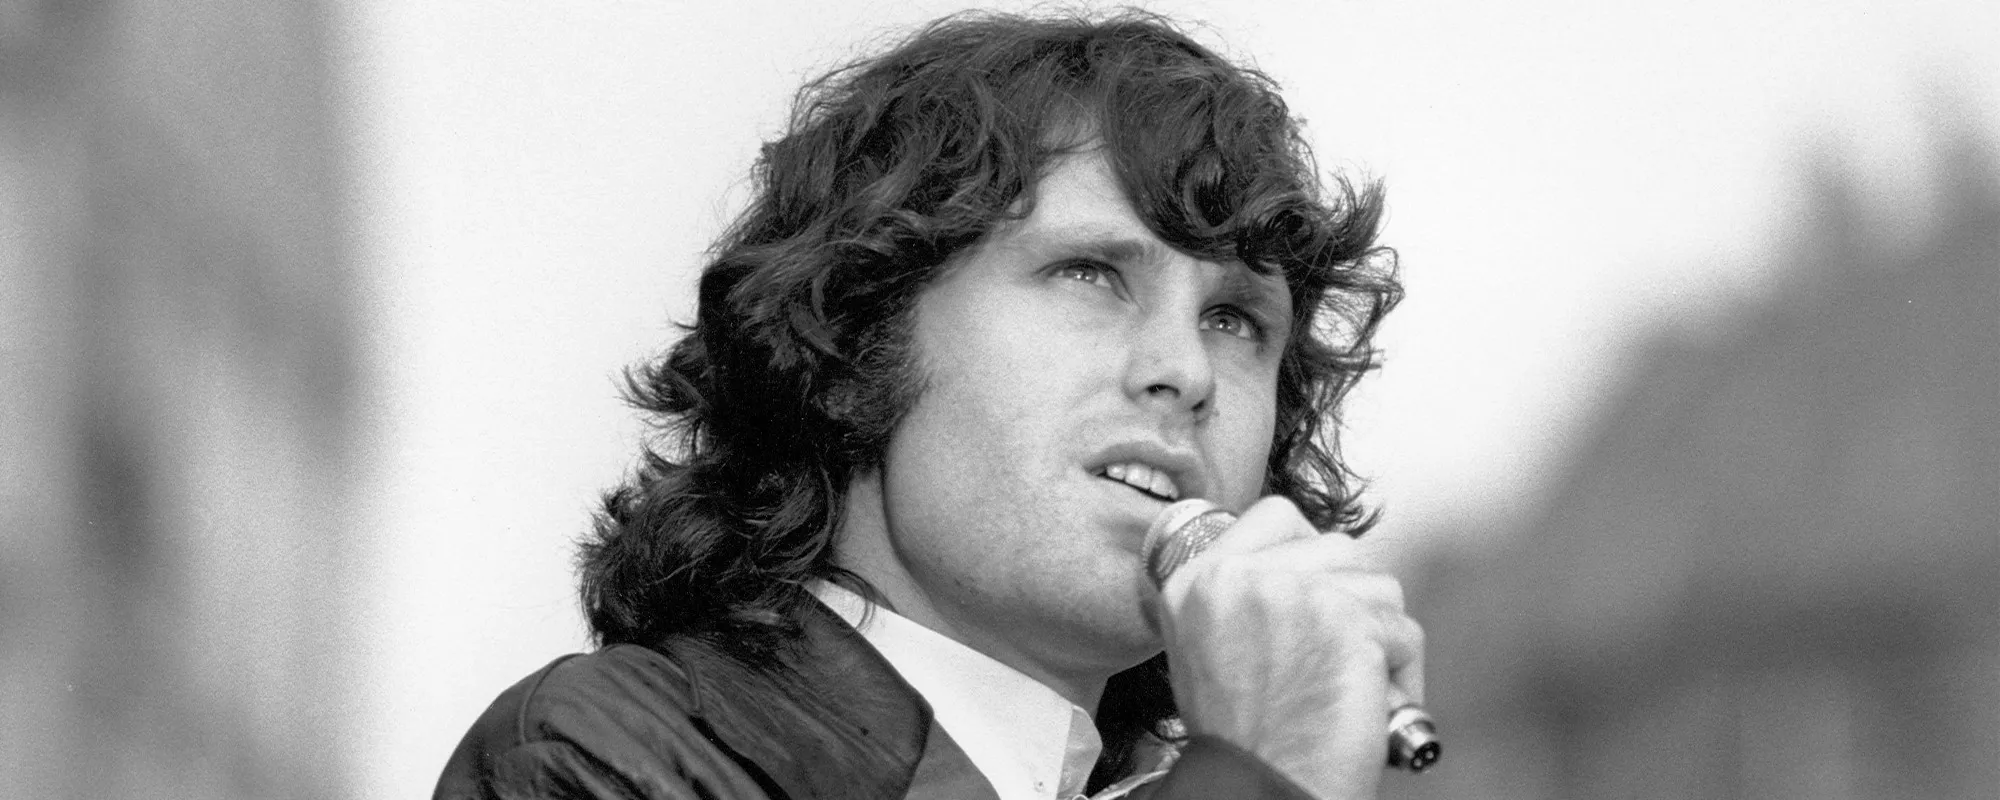 Remember When: Jim Morrison’s 1969 Arrest for Indecency